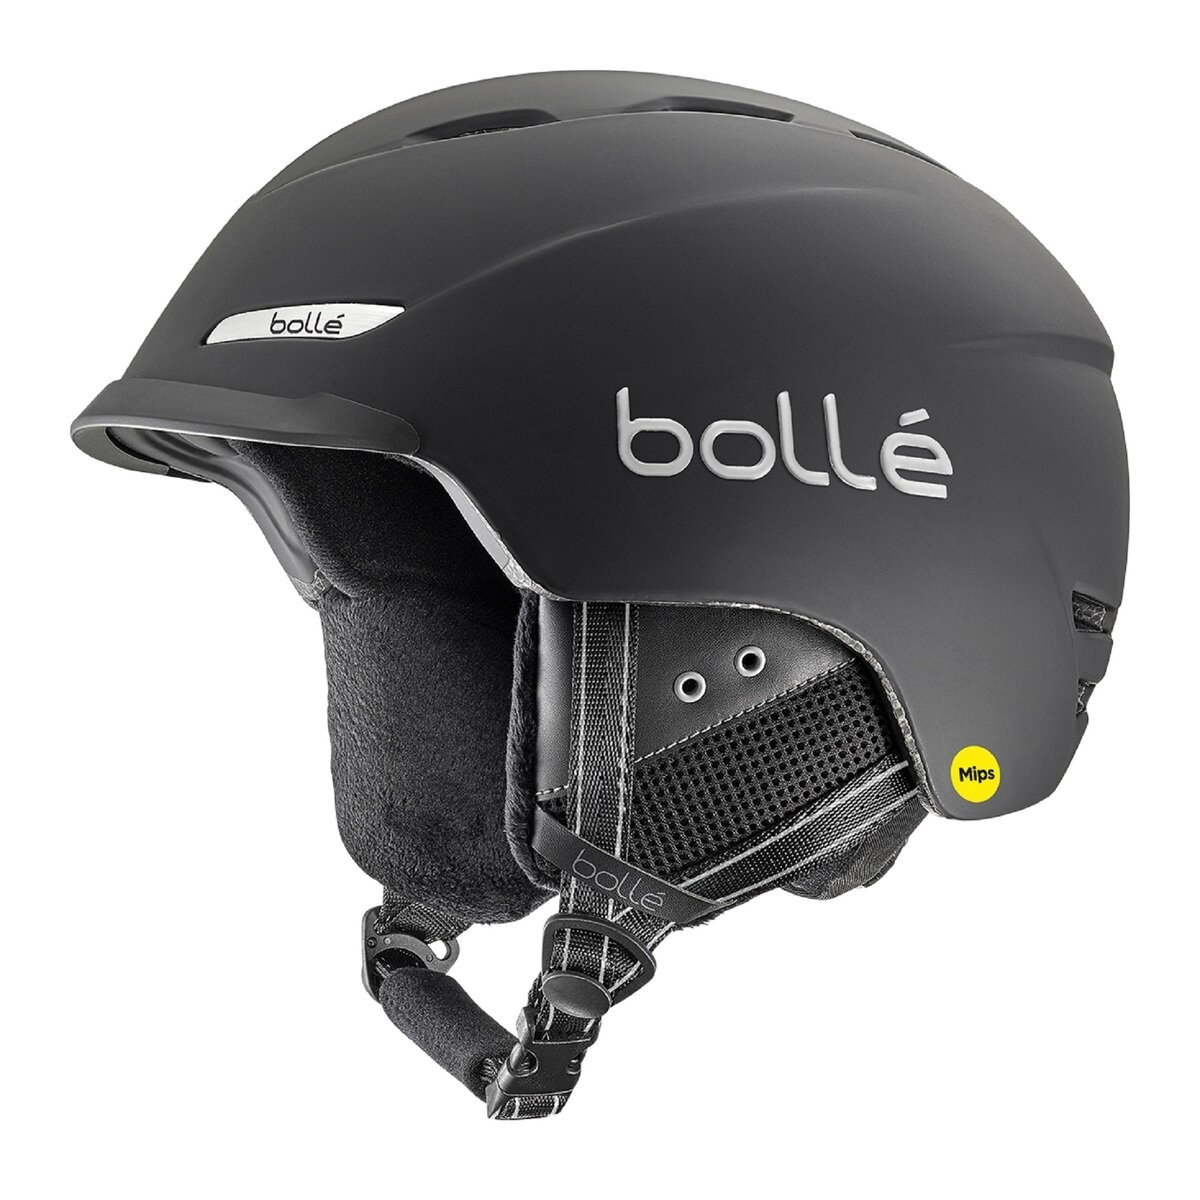 新品 大人用 bolle ボレー スキー スノボ ヘルメット サイズS Mips53-55cmテクノロジー